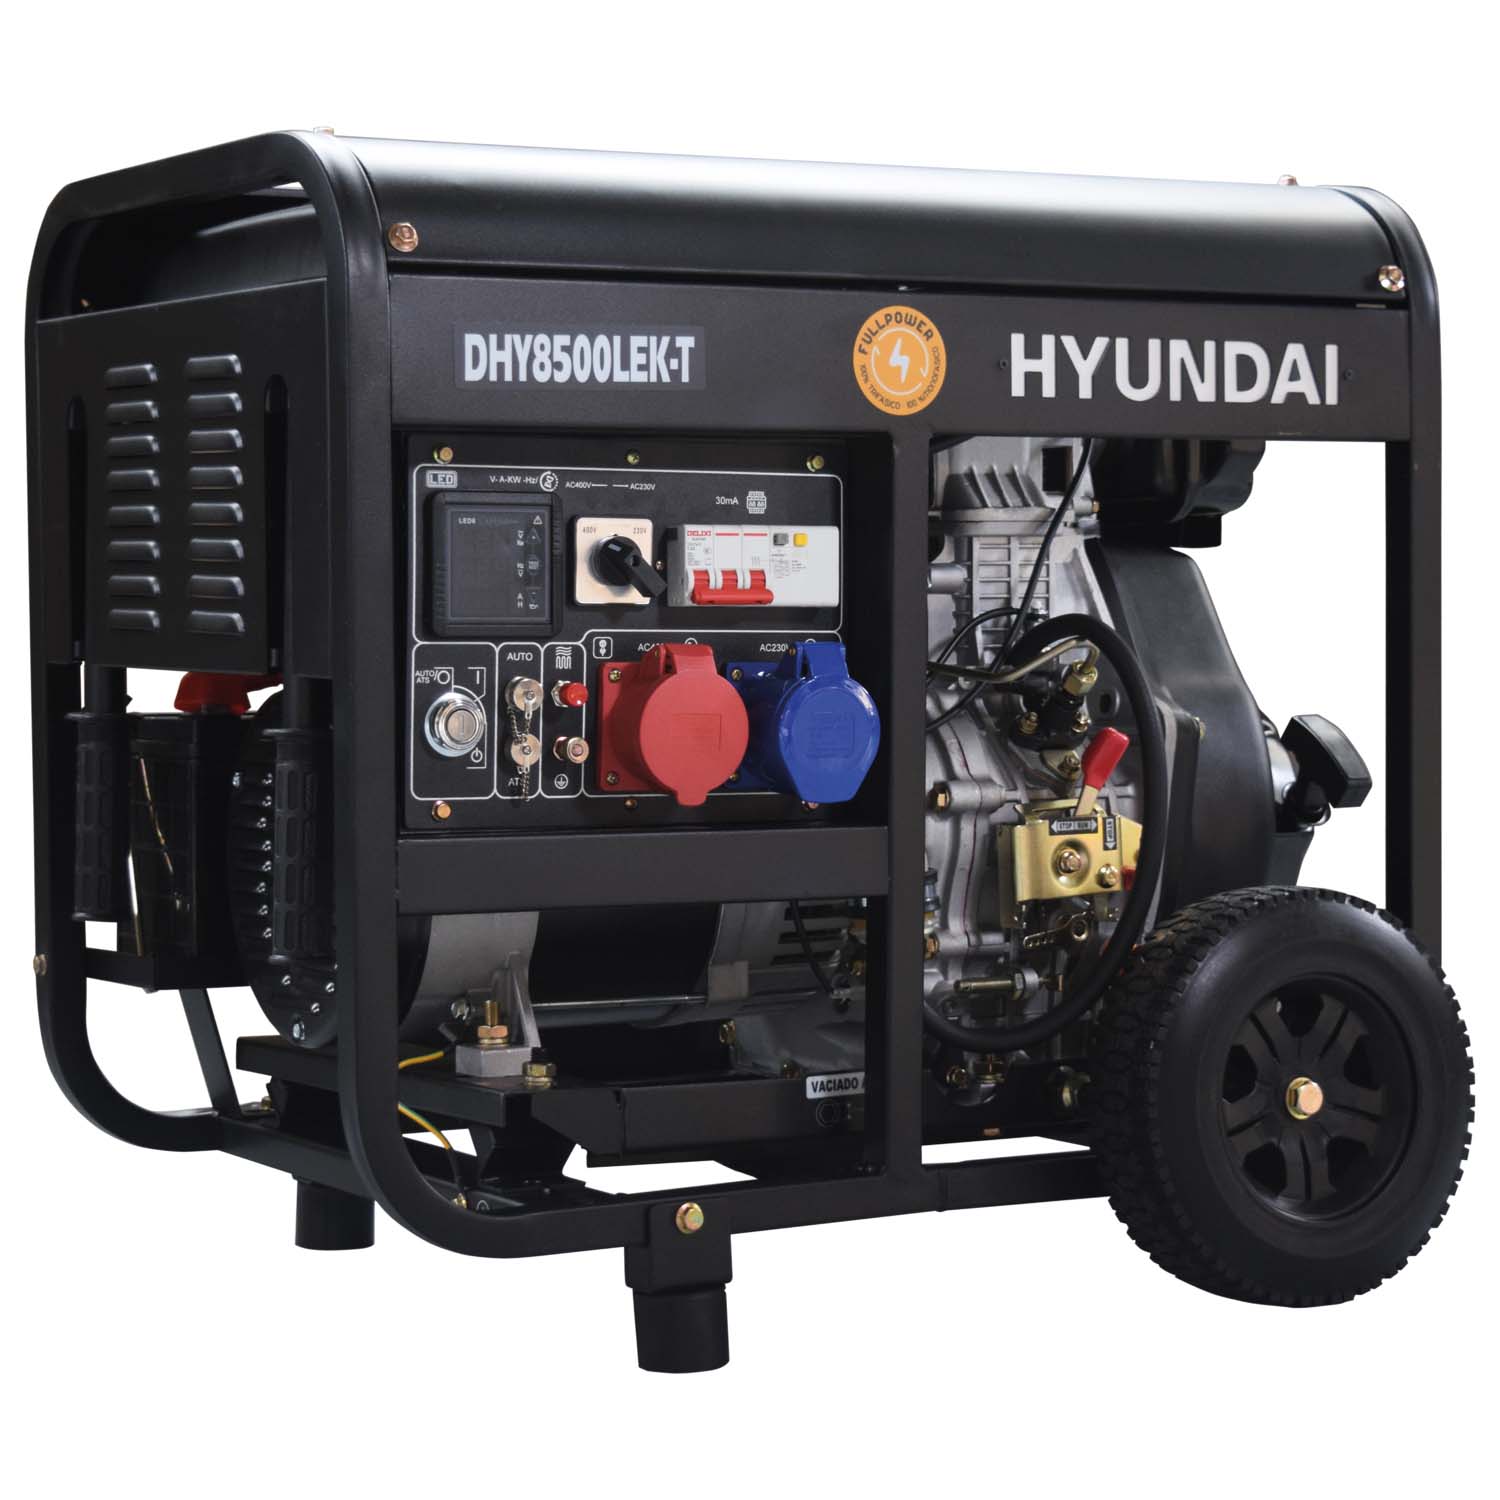 Hyundai diesel generator 7,5Kw - ES